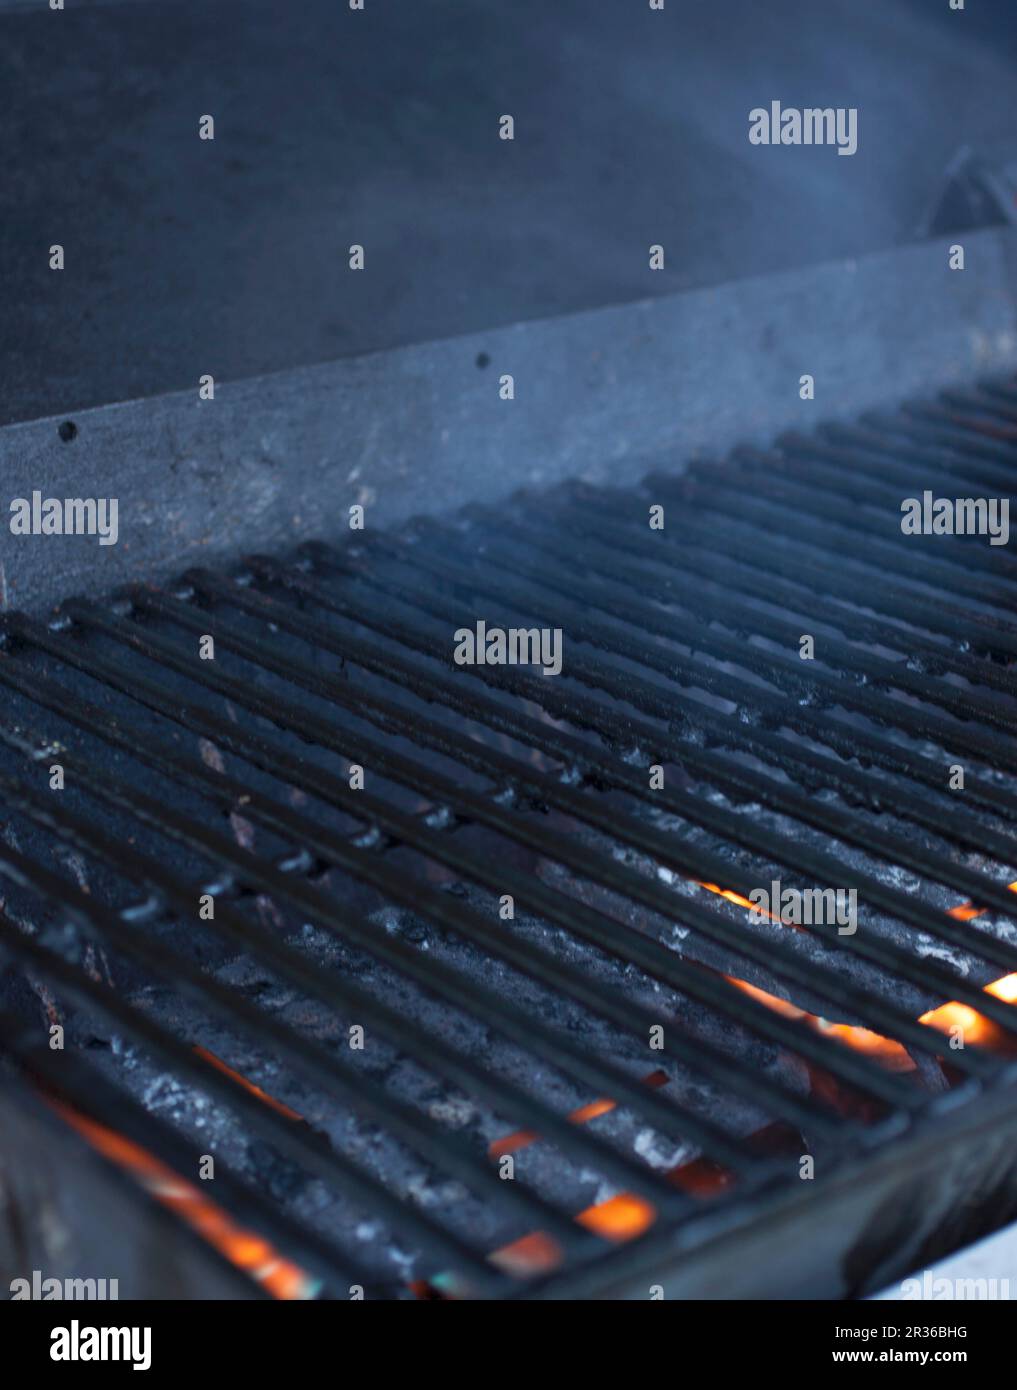 Une grille de cuisson sur un barbecue à charbon de bois Banque D'Images